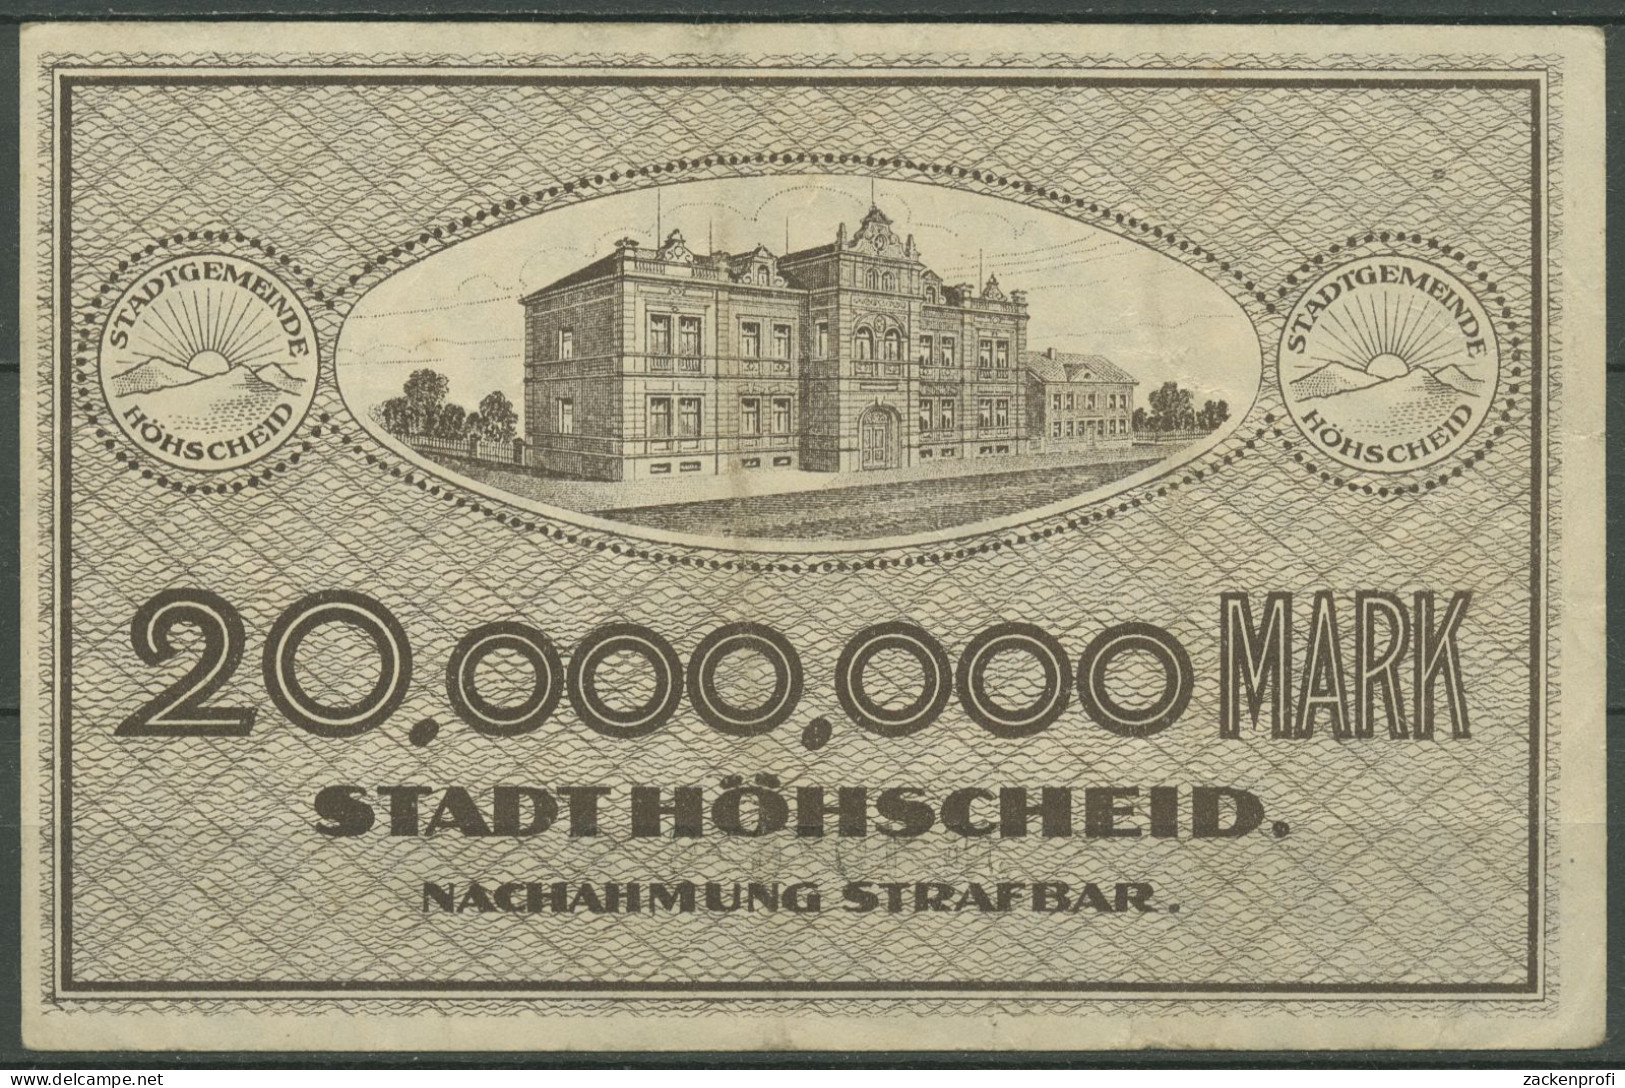 Höhscheid 20 Millionen Mark 1923, Keller 2396 C, Gebraucht (K1126) - Autres & Non Classés